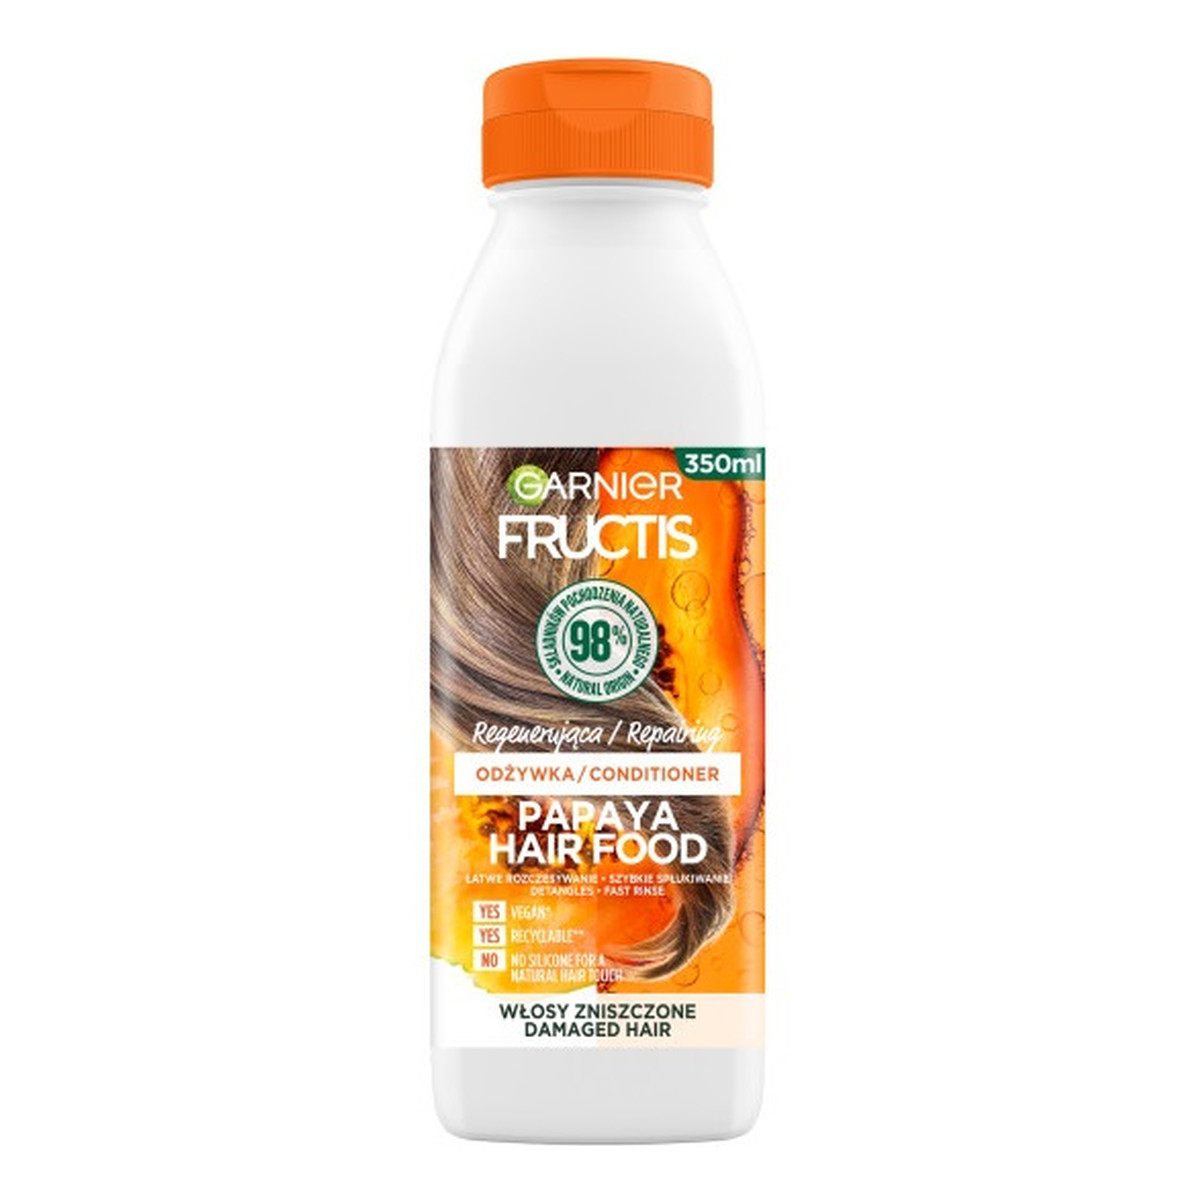 Garnier Fructis Papaya Hair Food odżywka regenerująca do włosów zniszczonych 350ml